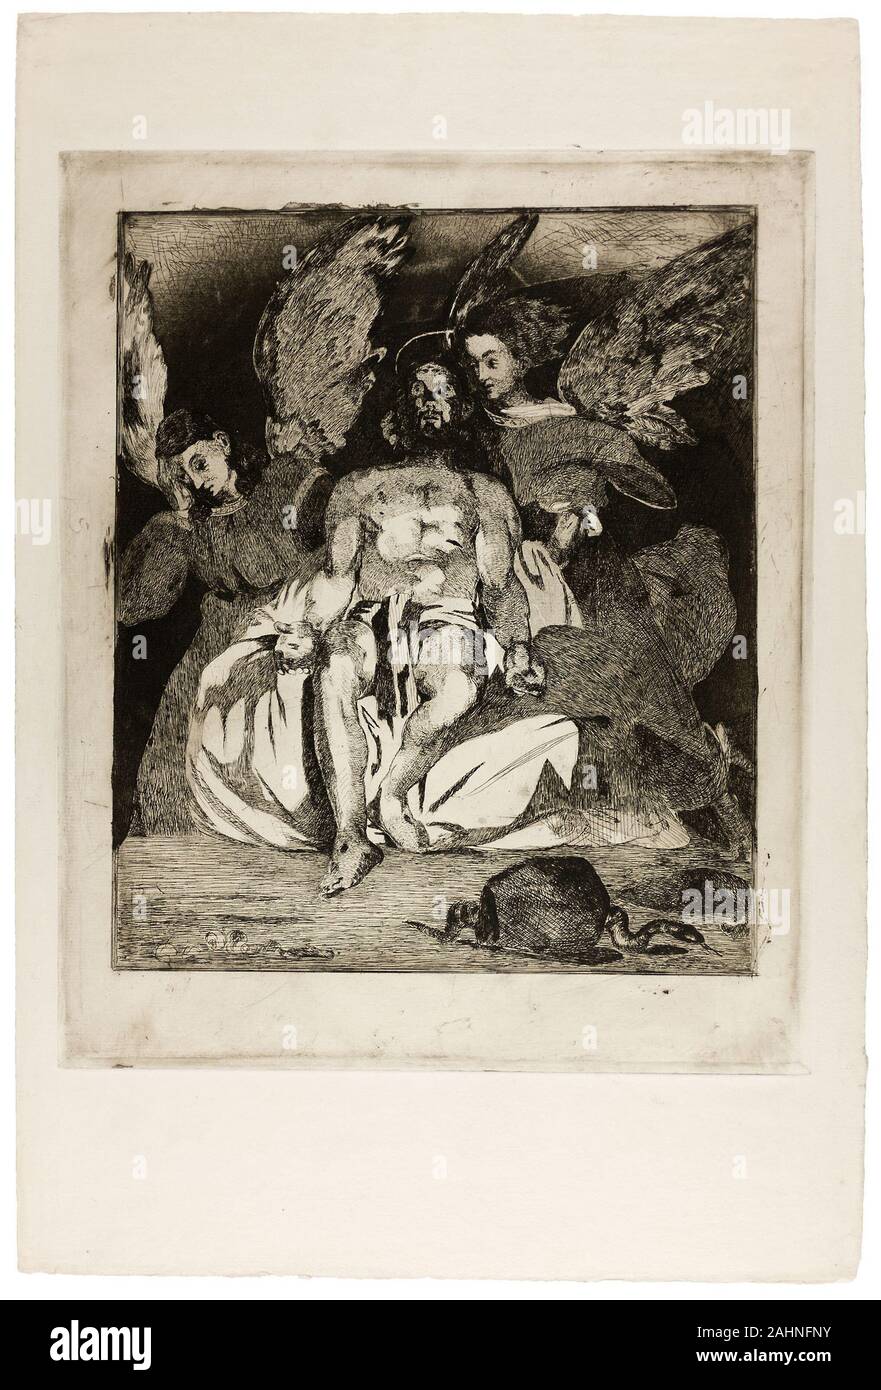 Édouard Manet. Cristo Muerto con ángeles. 1866-1867. Francia. Aguafuerte y Aguatinta en negro sobre papel establecido de marfil Foto de stock